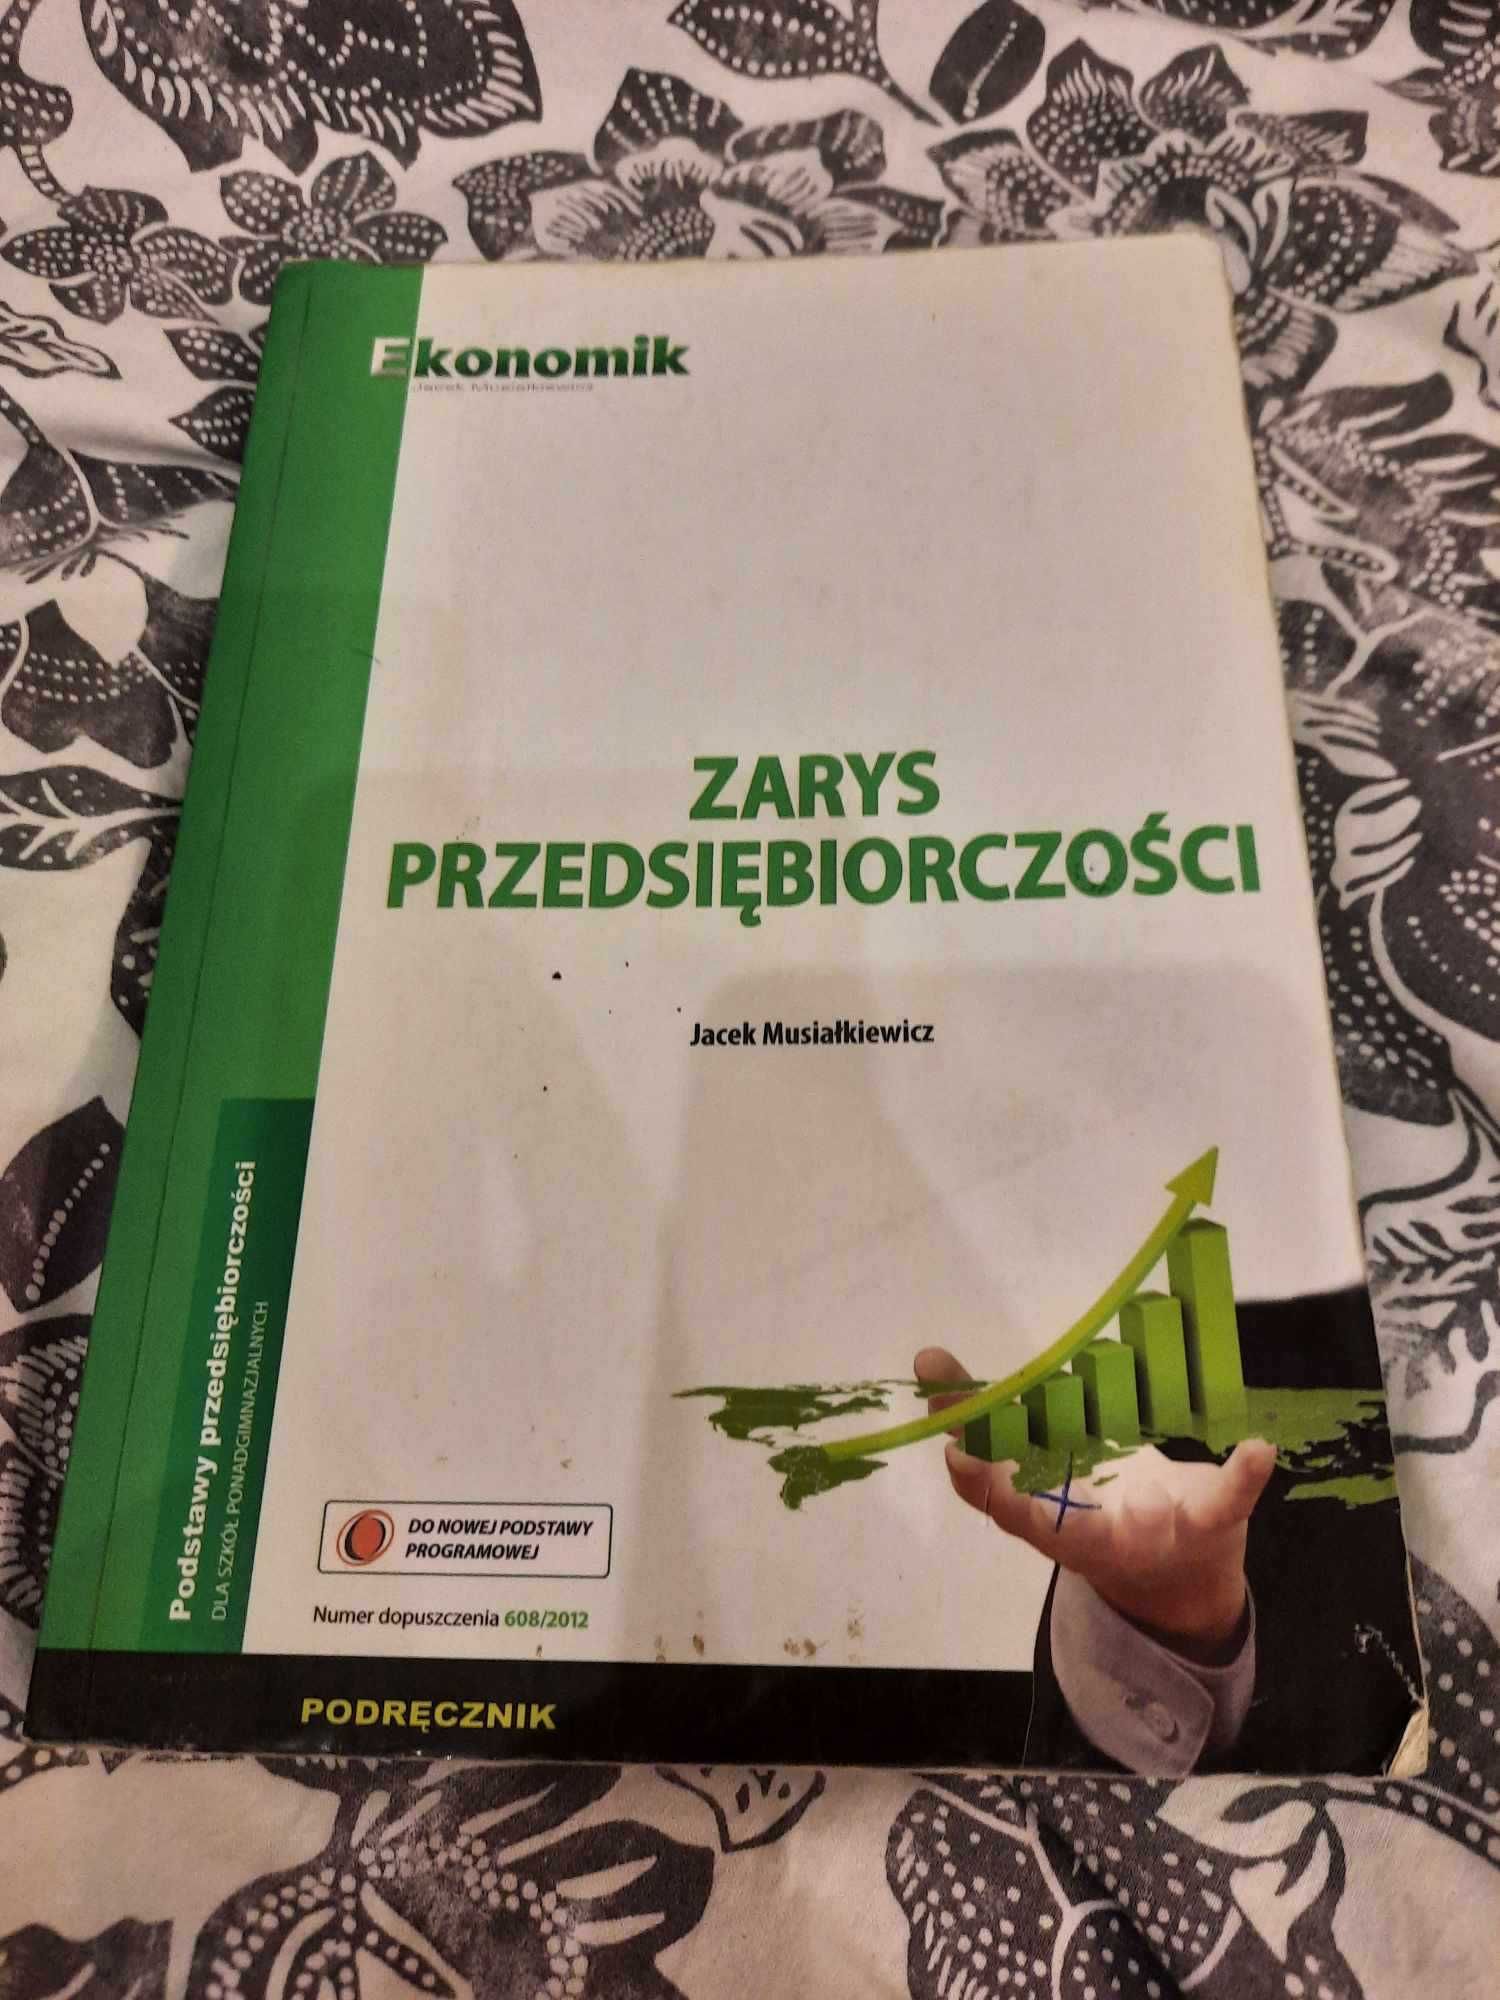 Książka ekonomik Zarys przedsiębiorczości Jacek Musiałkiewicz